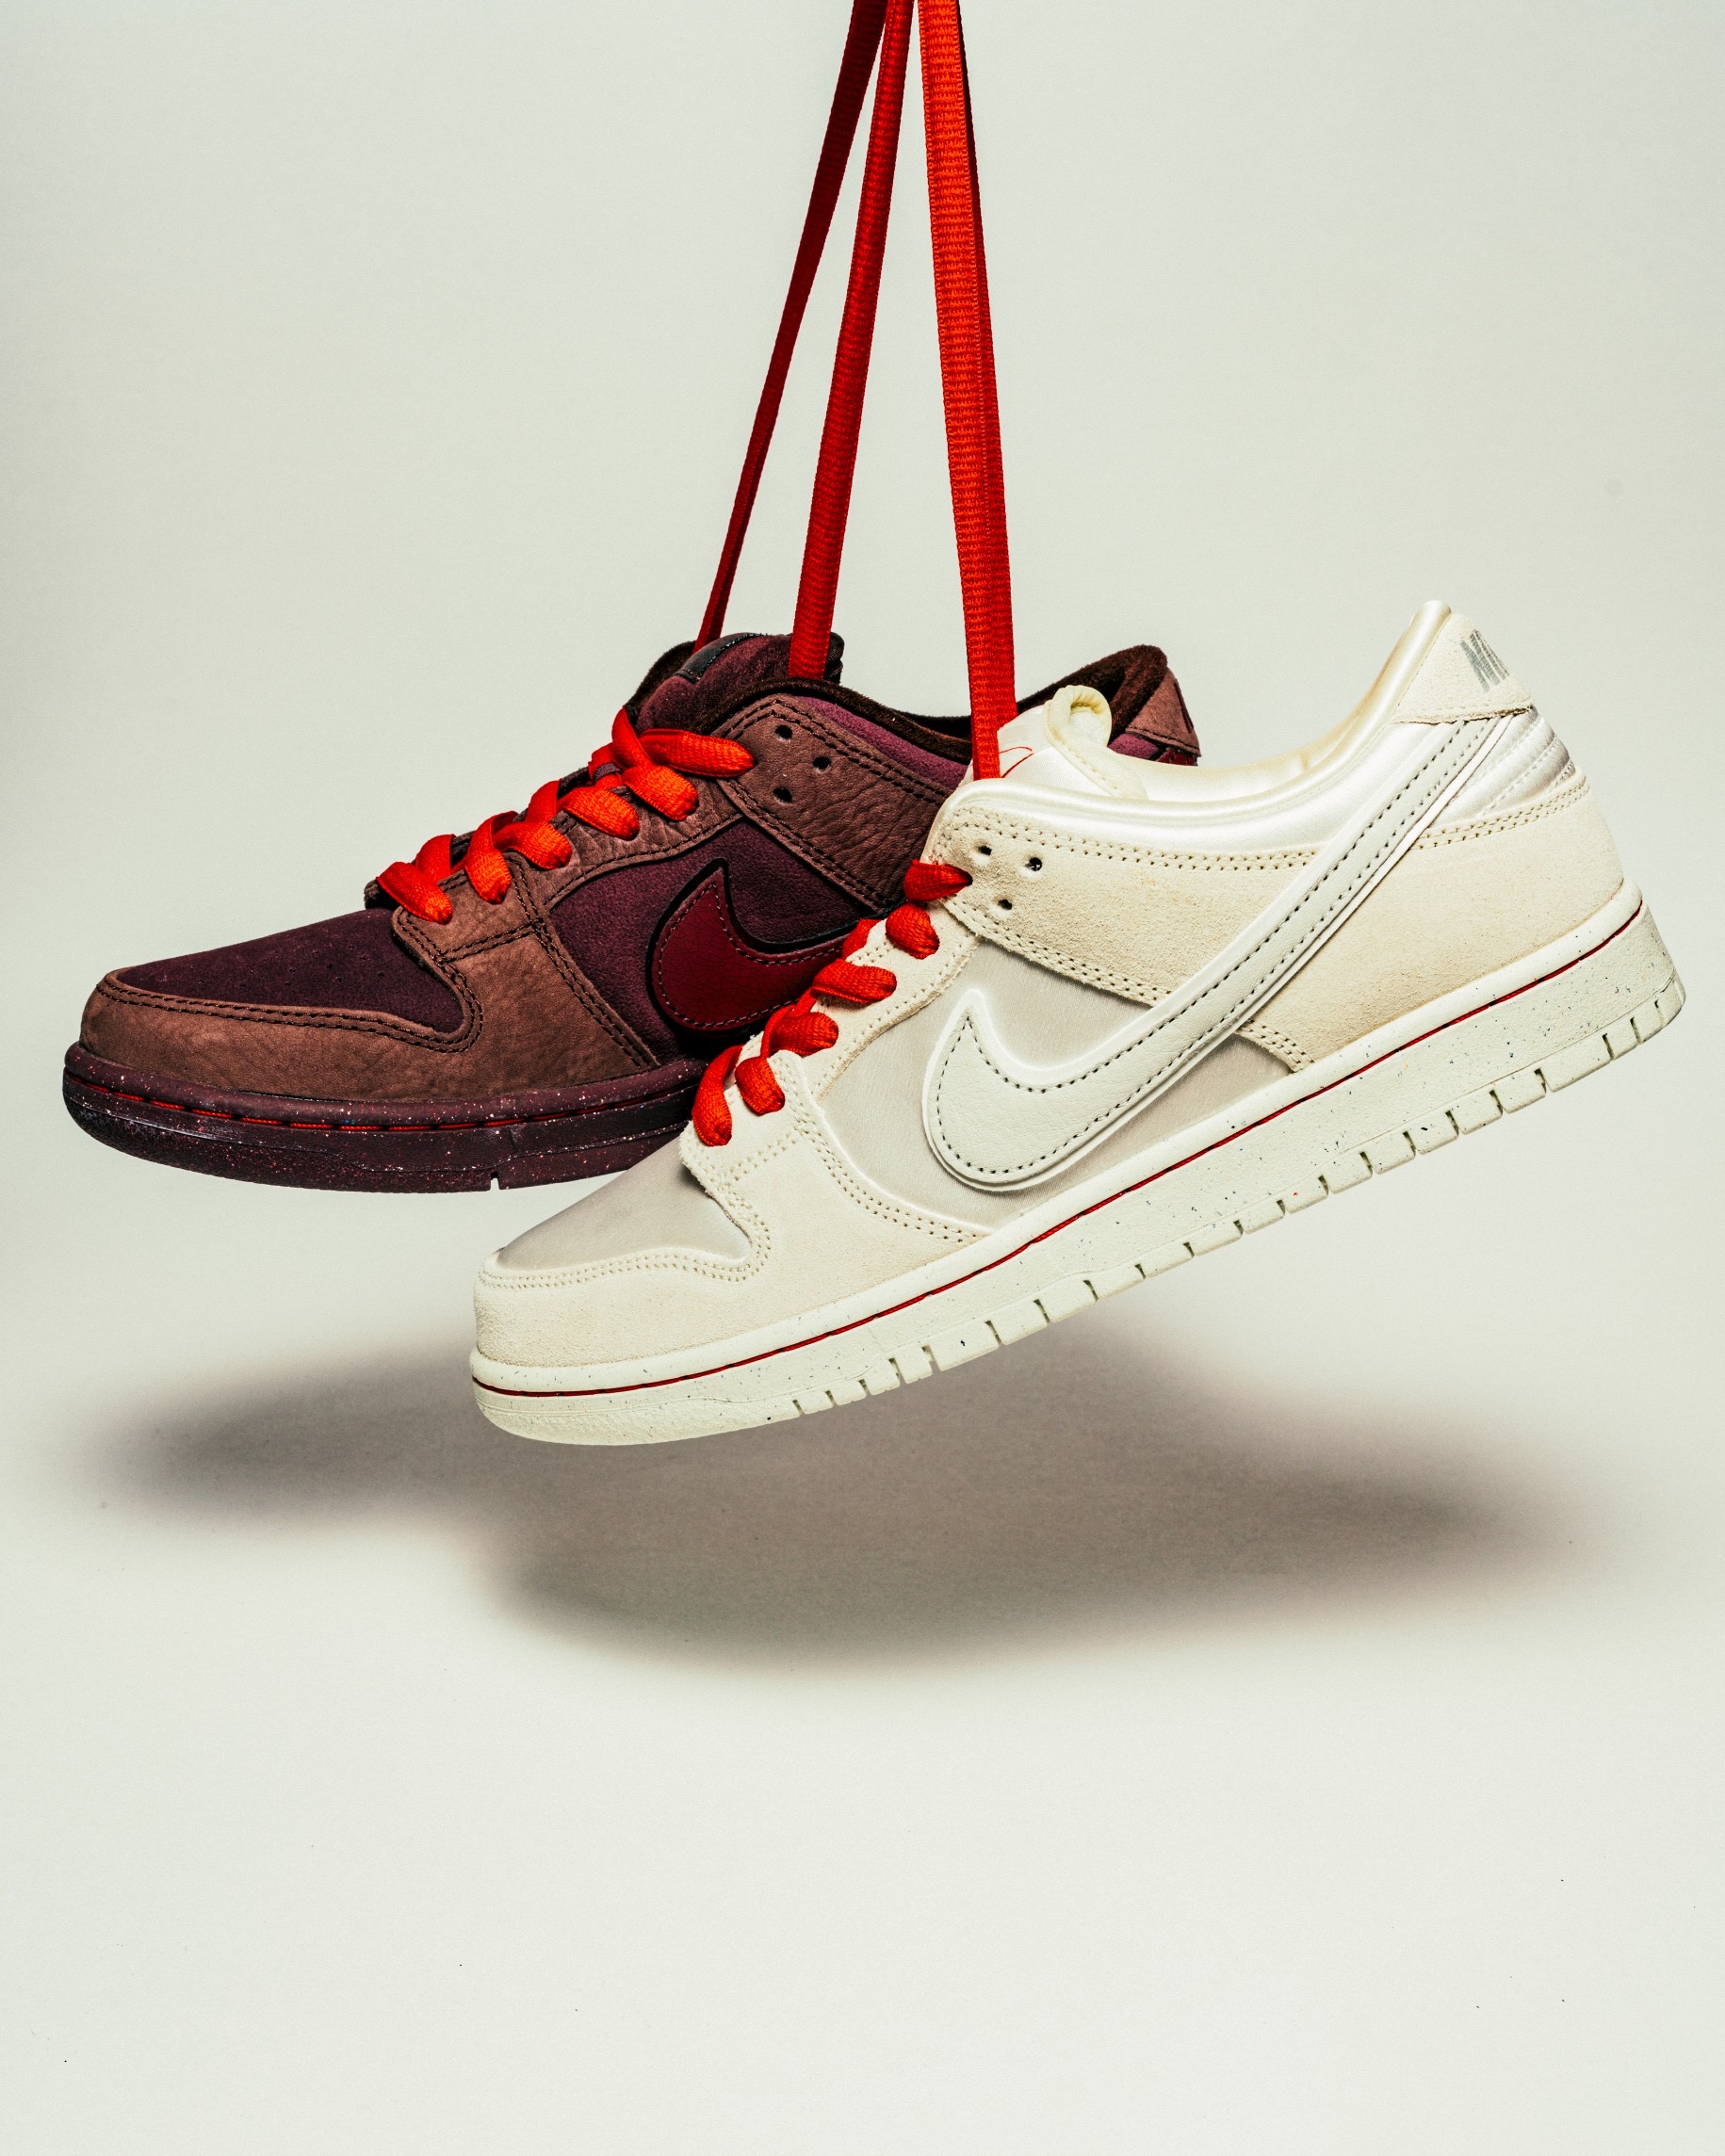 2月12日(月)発売 Nike SB ”City of Love” Collection | スケボー通販 ...